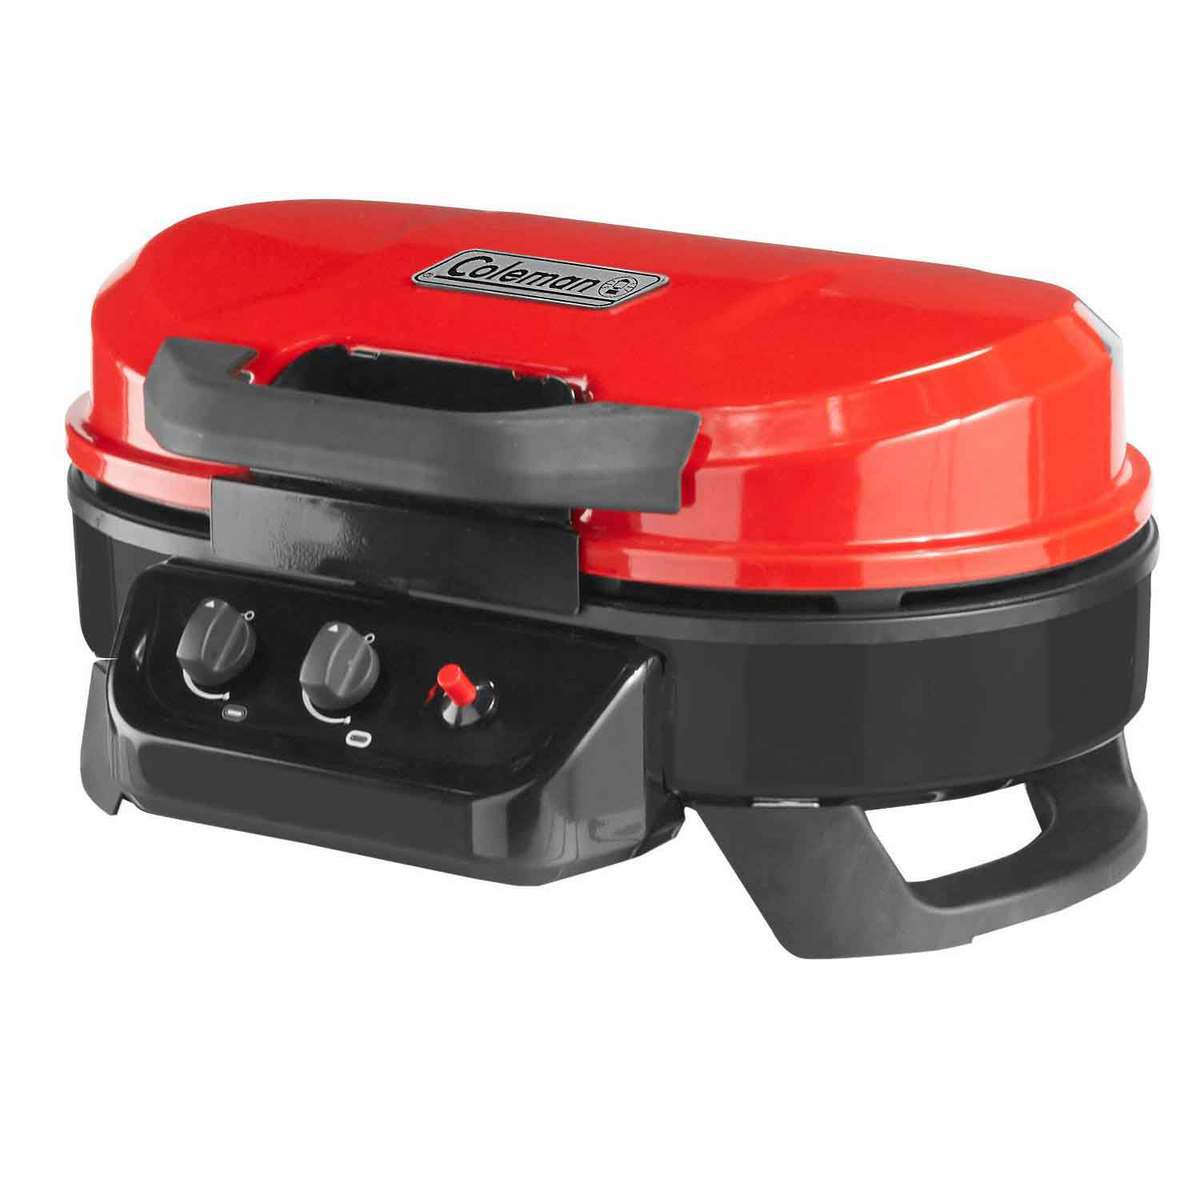 https://www.sportsmans.com/medias/coleman-roadtrip-225-portable-2-burner-stove-red-1527480-1.jpg?context=bWFzdGVyfGltYWdlc3w1Mzk2MXxpbWFnZS9qcGVnfGltYWdlcy9oMWEvaDU1Lzk3MzMyMjIyMzYxOTAuanBnfDQzMWZiMzE2Mjk0NGJmYWY3MTZlMjQ1ZmI5NzM2NDhlNGMxMWMwZTdmMDc4NTAwYjQyNDI0ZjE3NDM3ZWM3NDQ